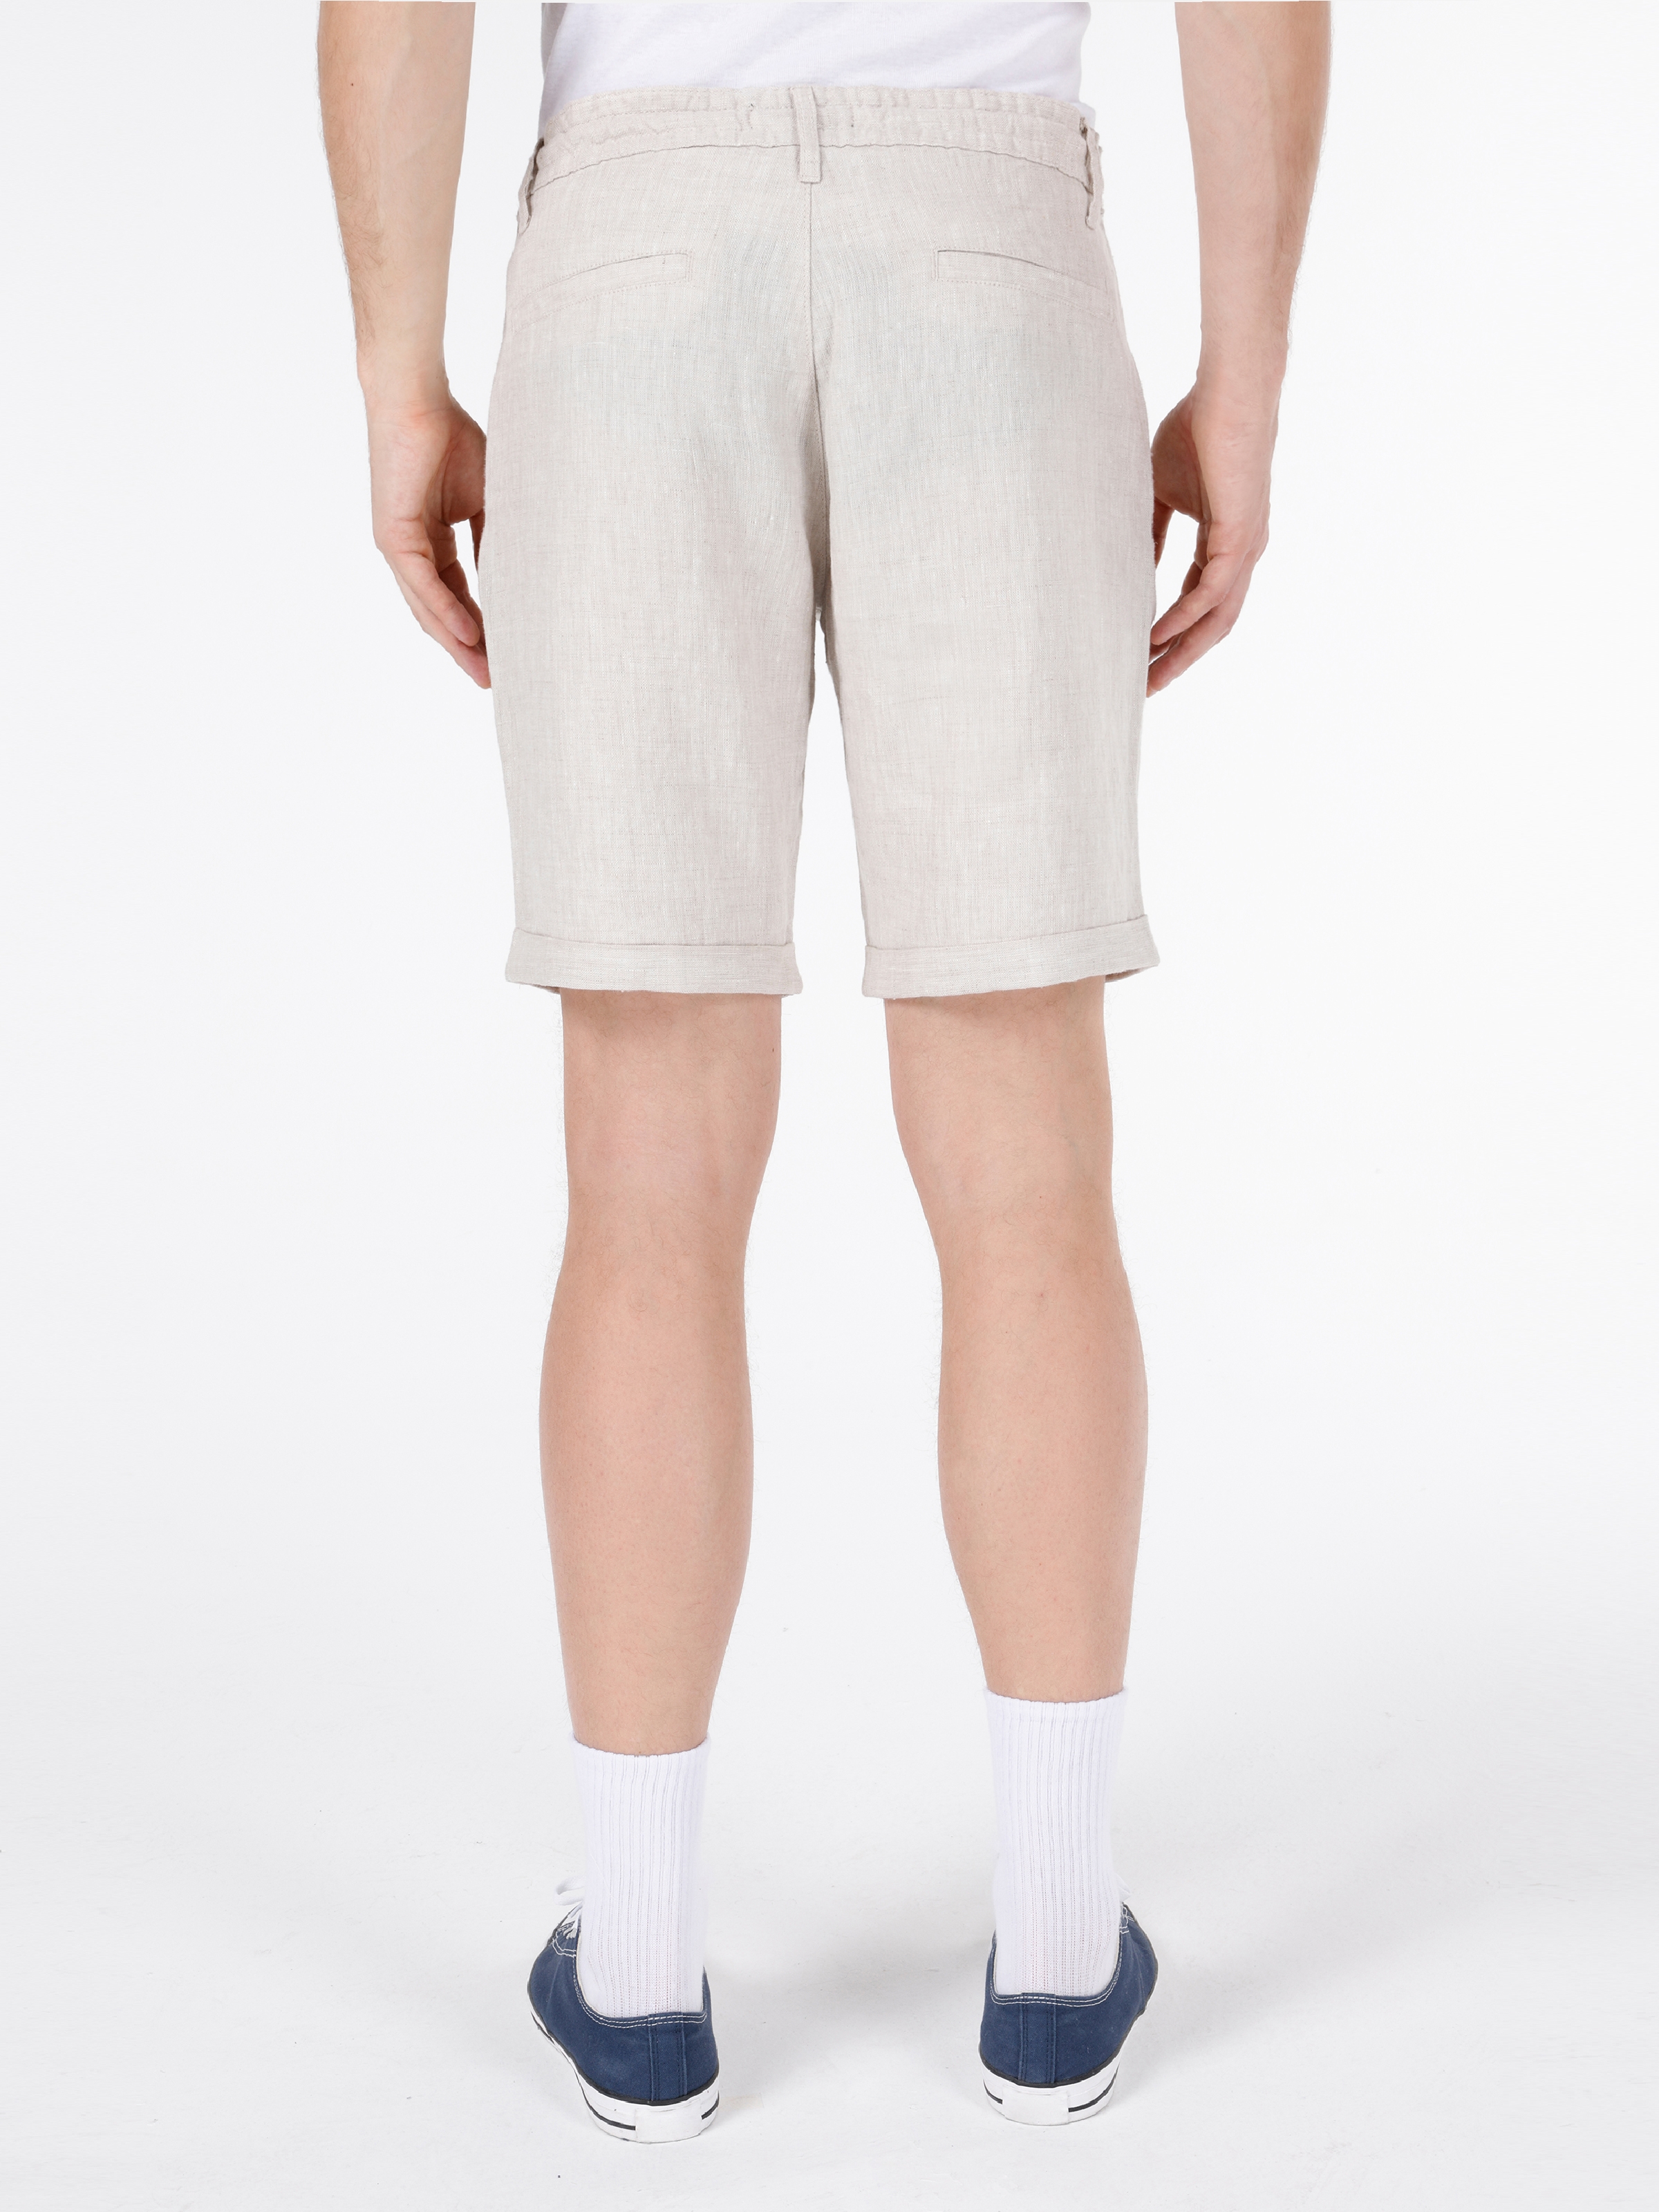 Afișați detalii pentru Short / Pantaloni Scurti De Barbati Alb Regular Fit  